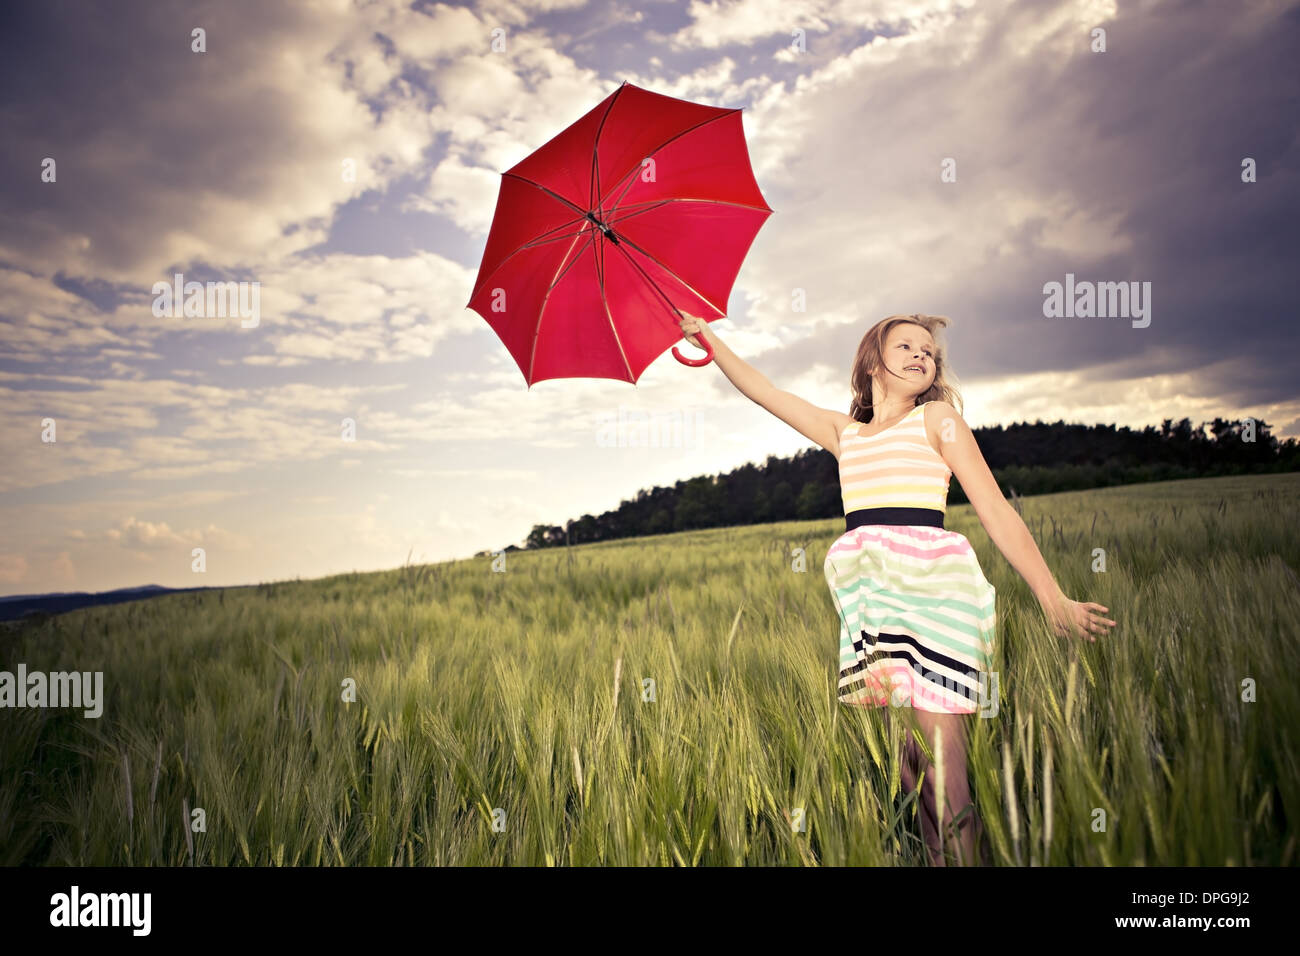 Ragazza adolescente jumping con un ombrello nella parte anteriore del paesaggio rurale Foto Stock